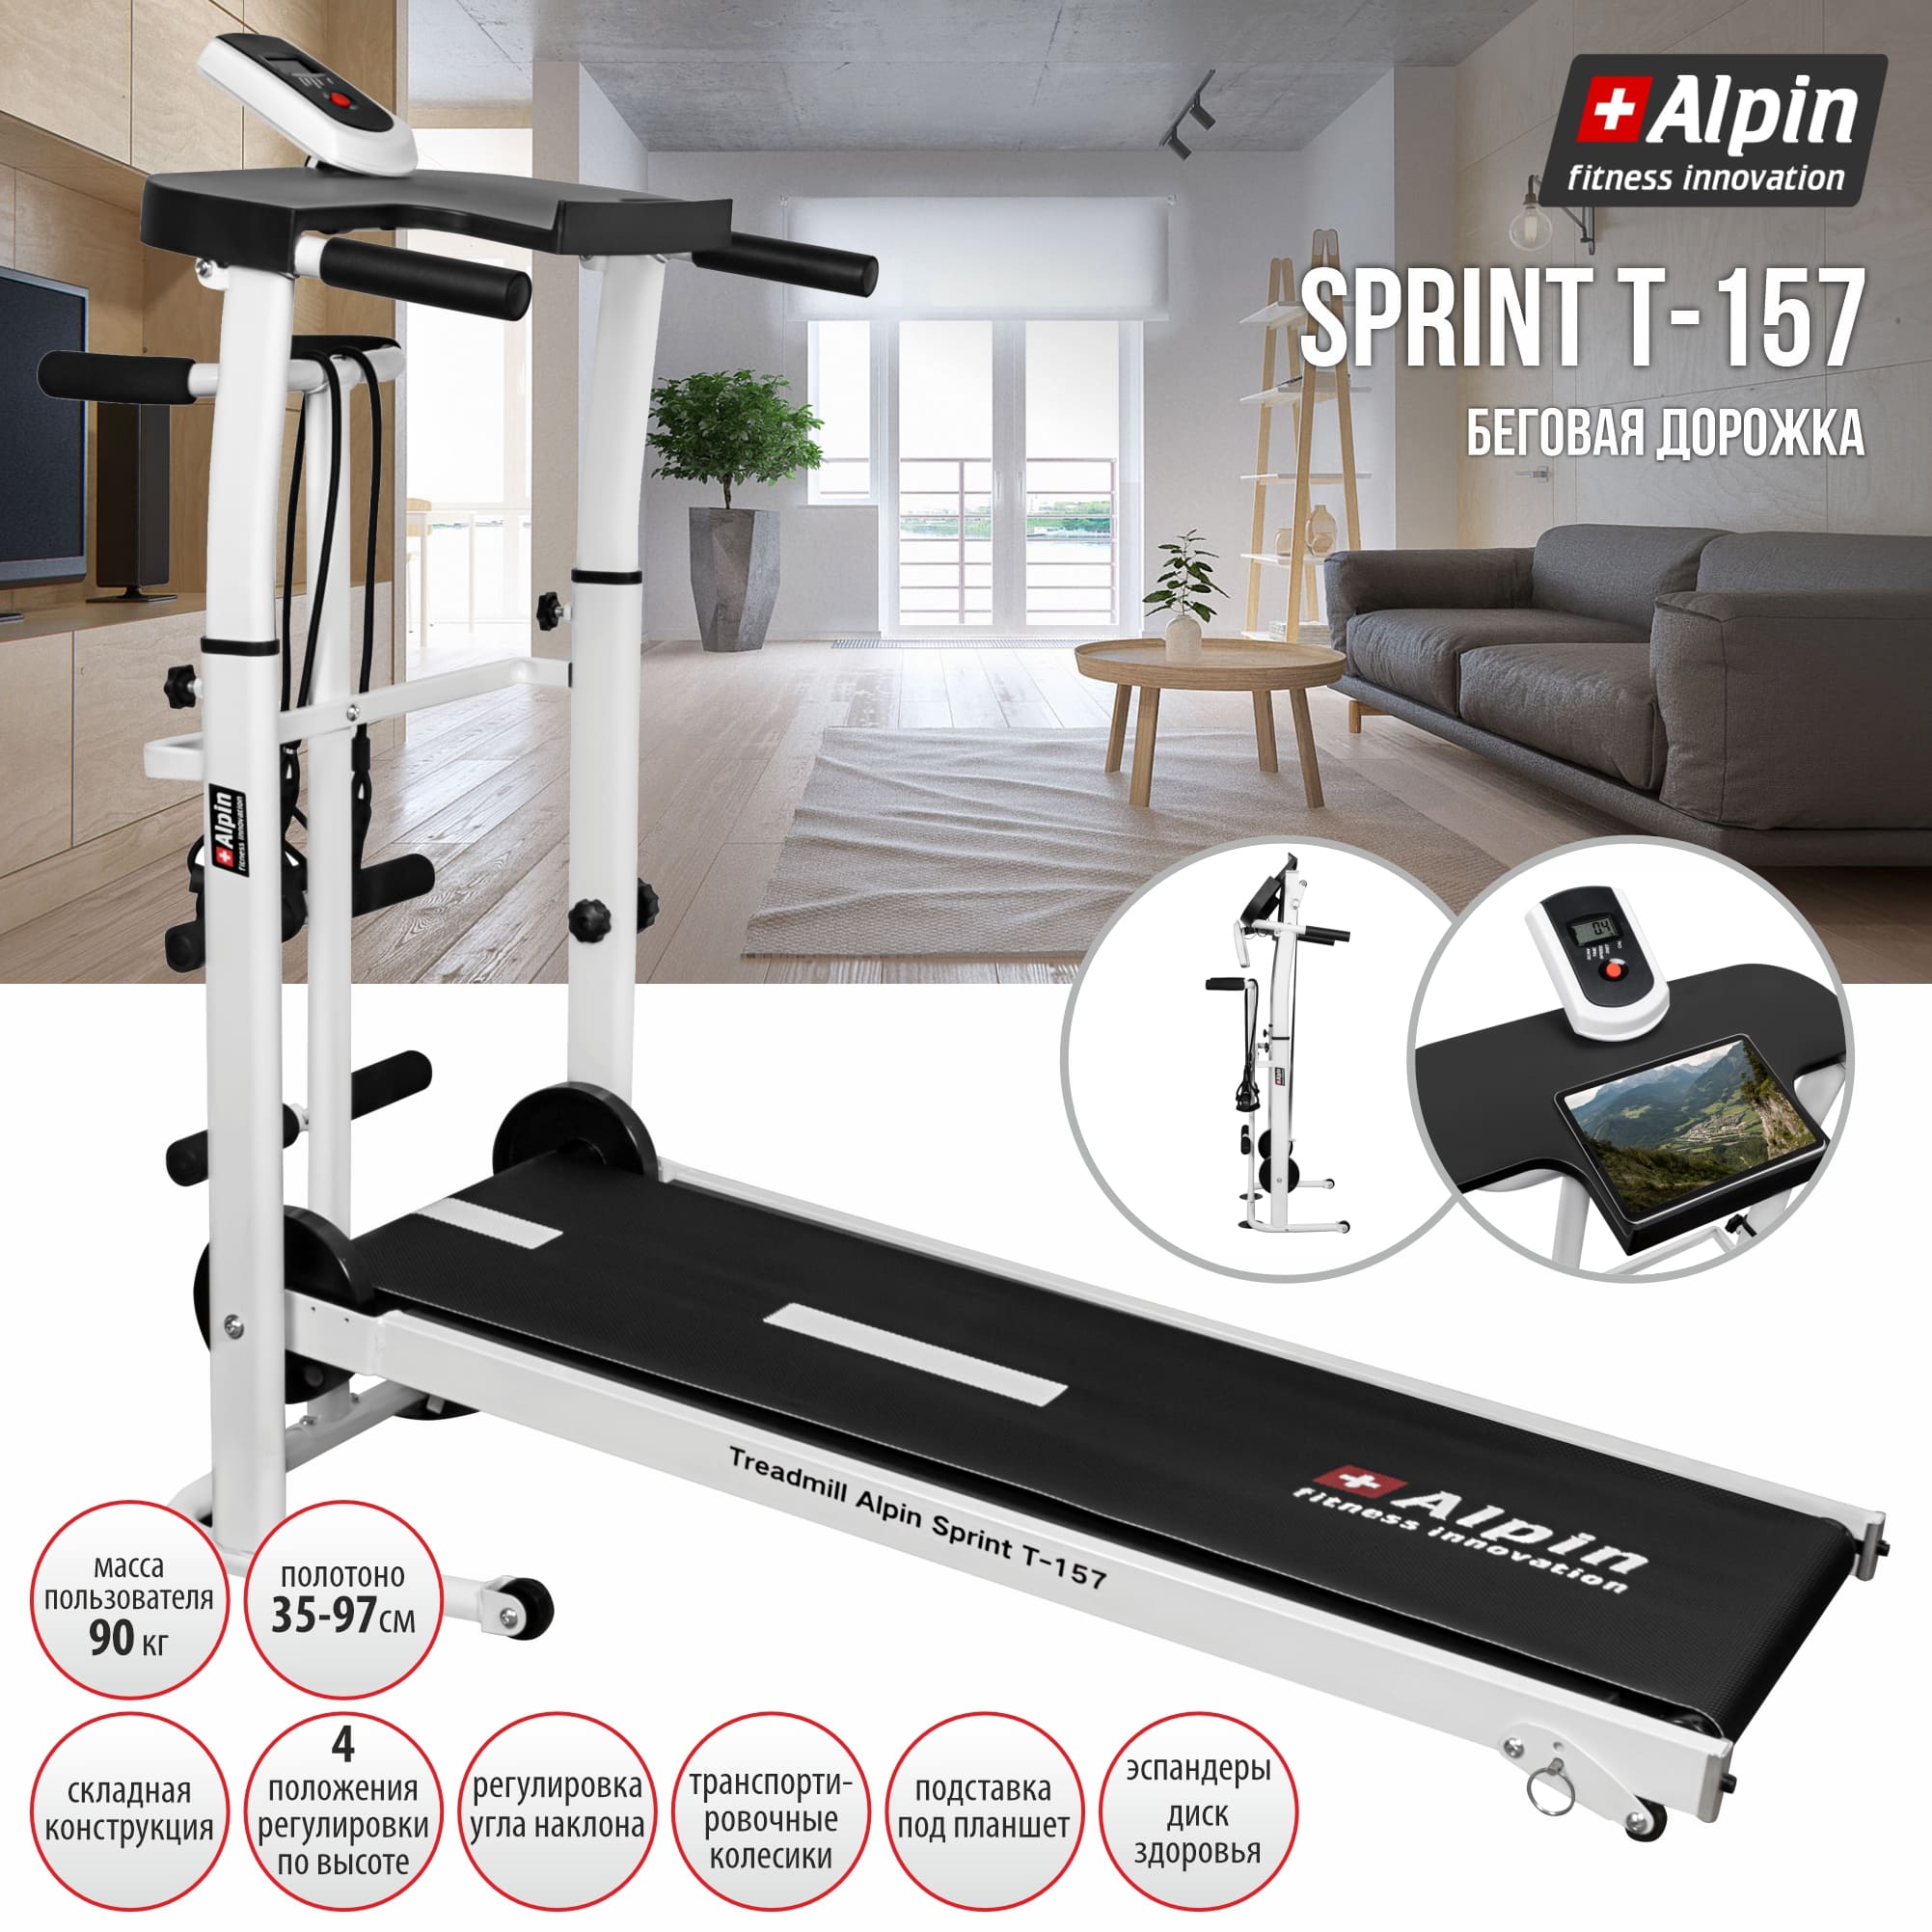 Treadmill_Alpin_Sprint_T-157.jpg